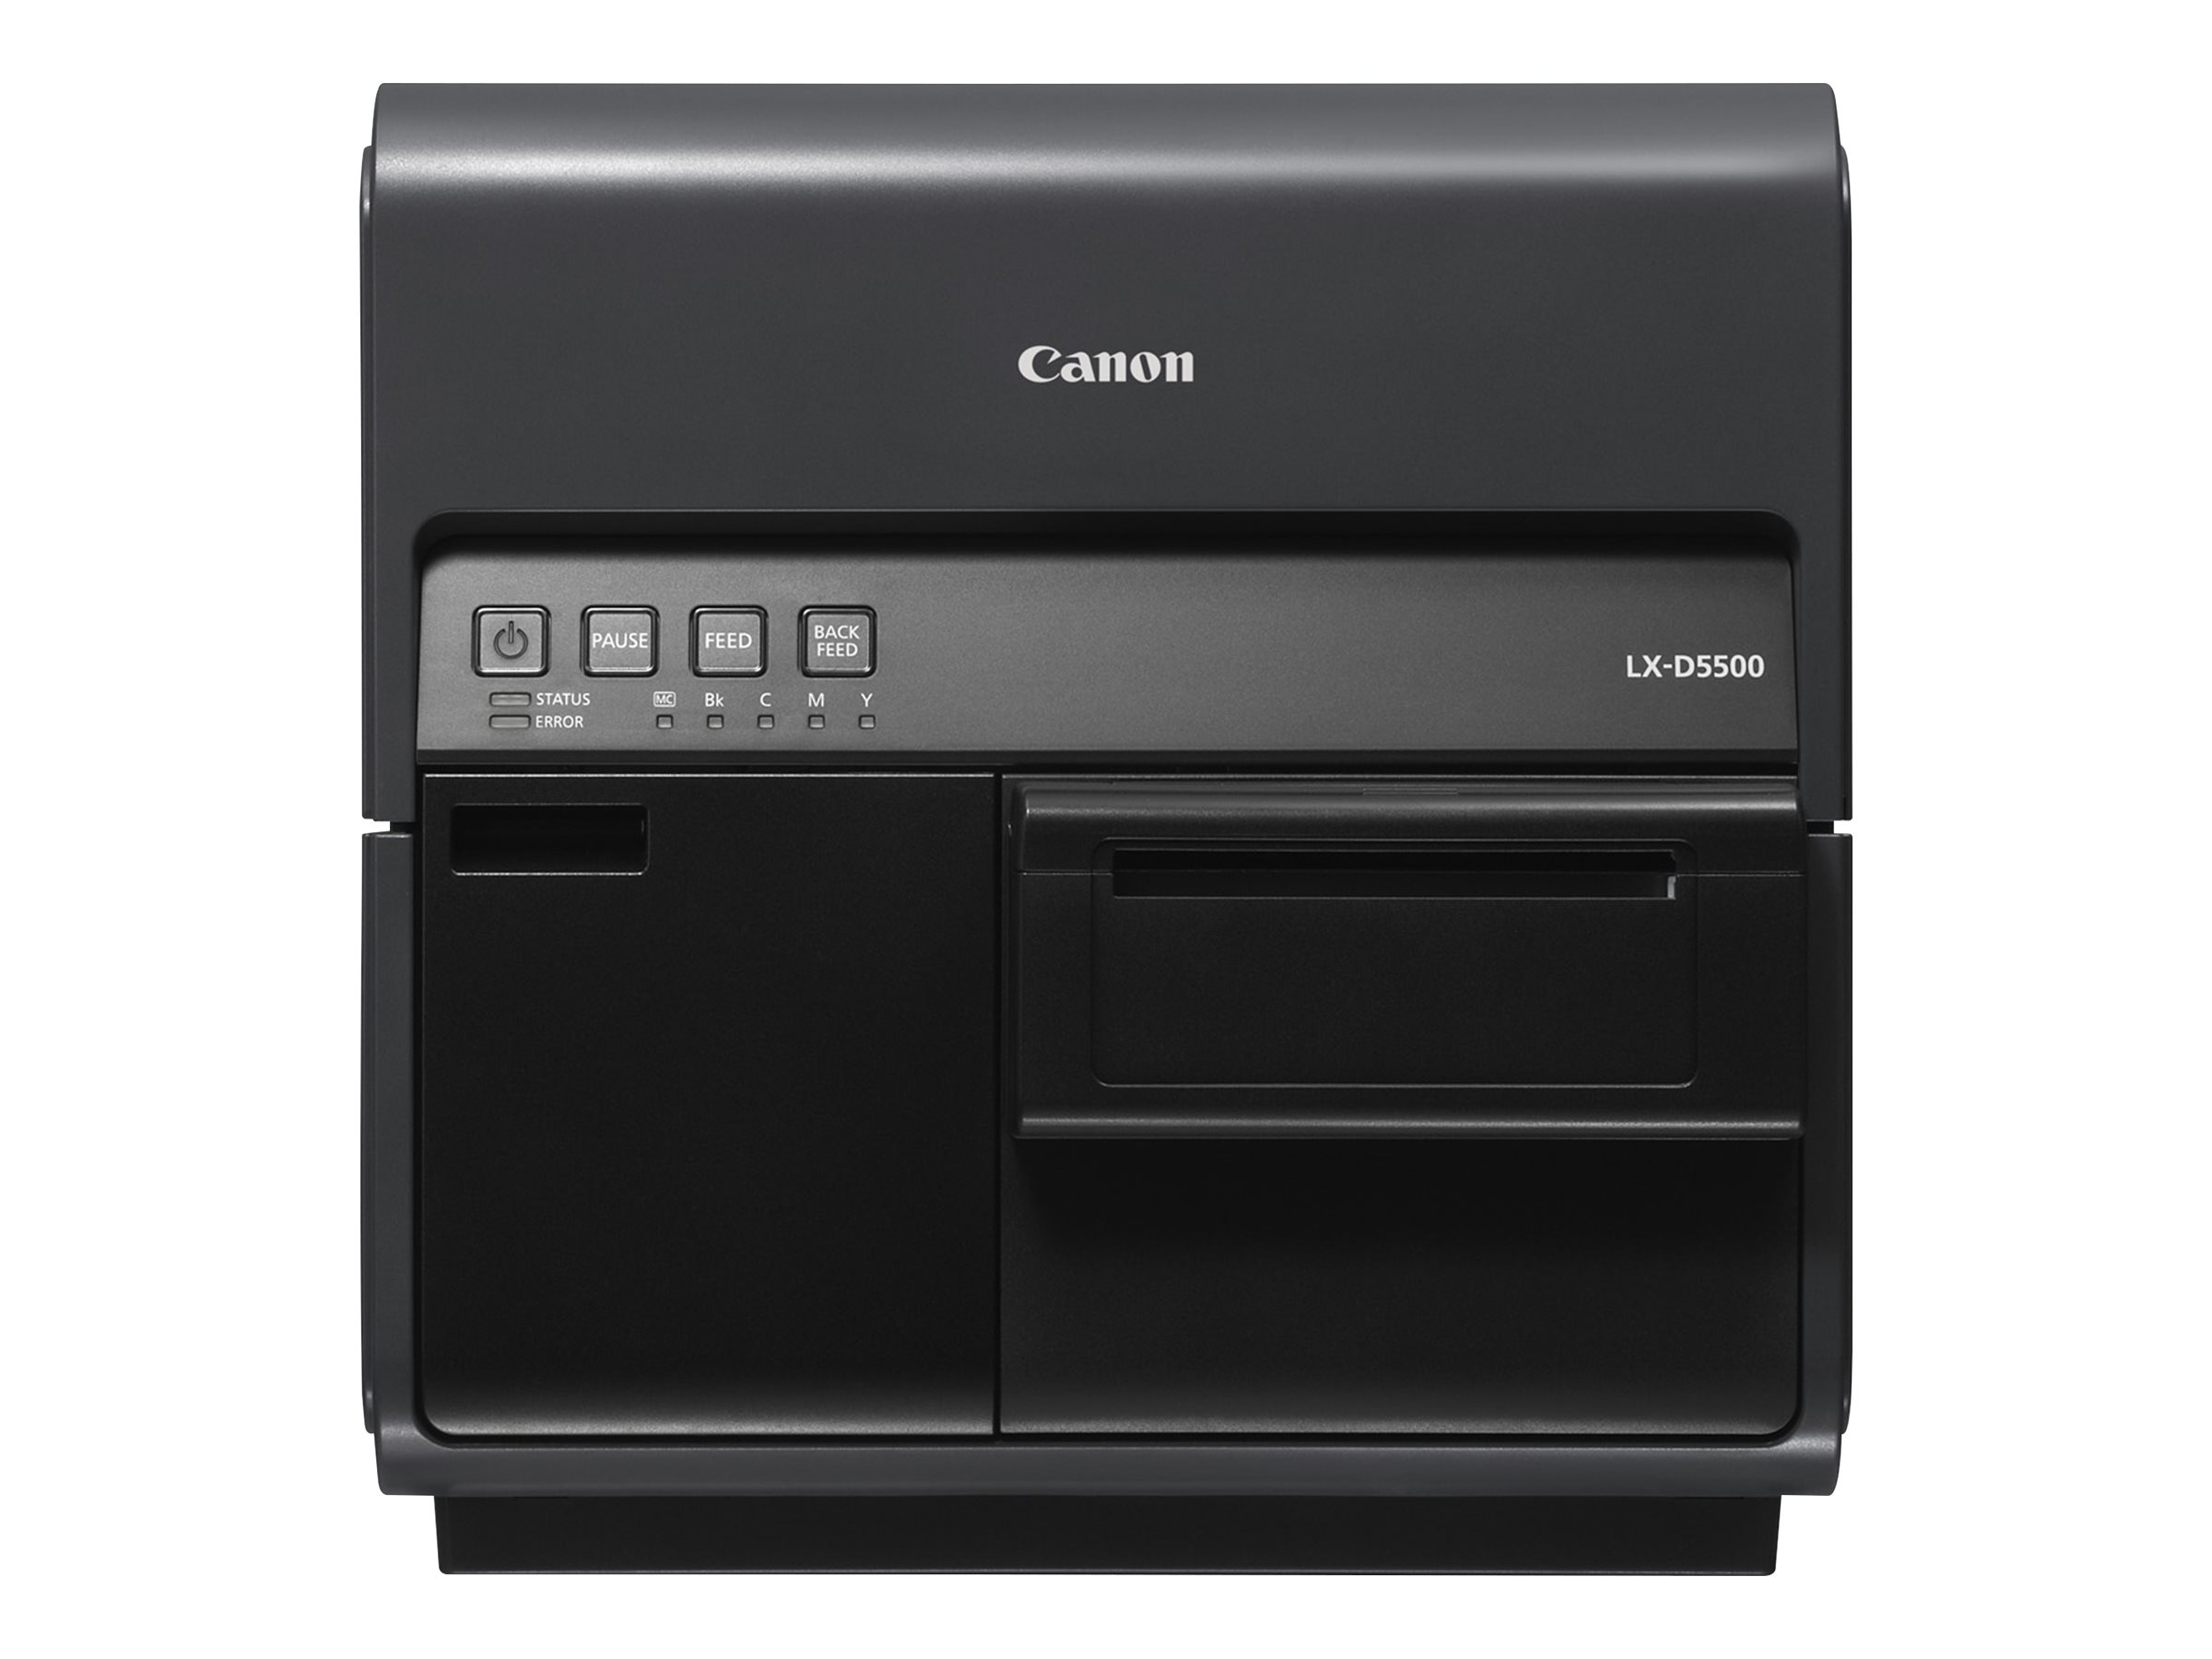 Canon LX-D5500 - Label printer